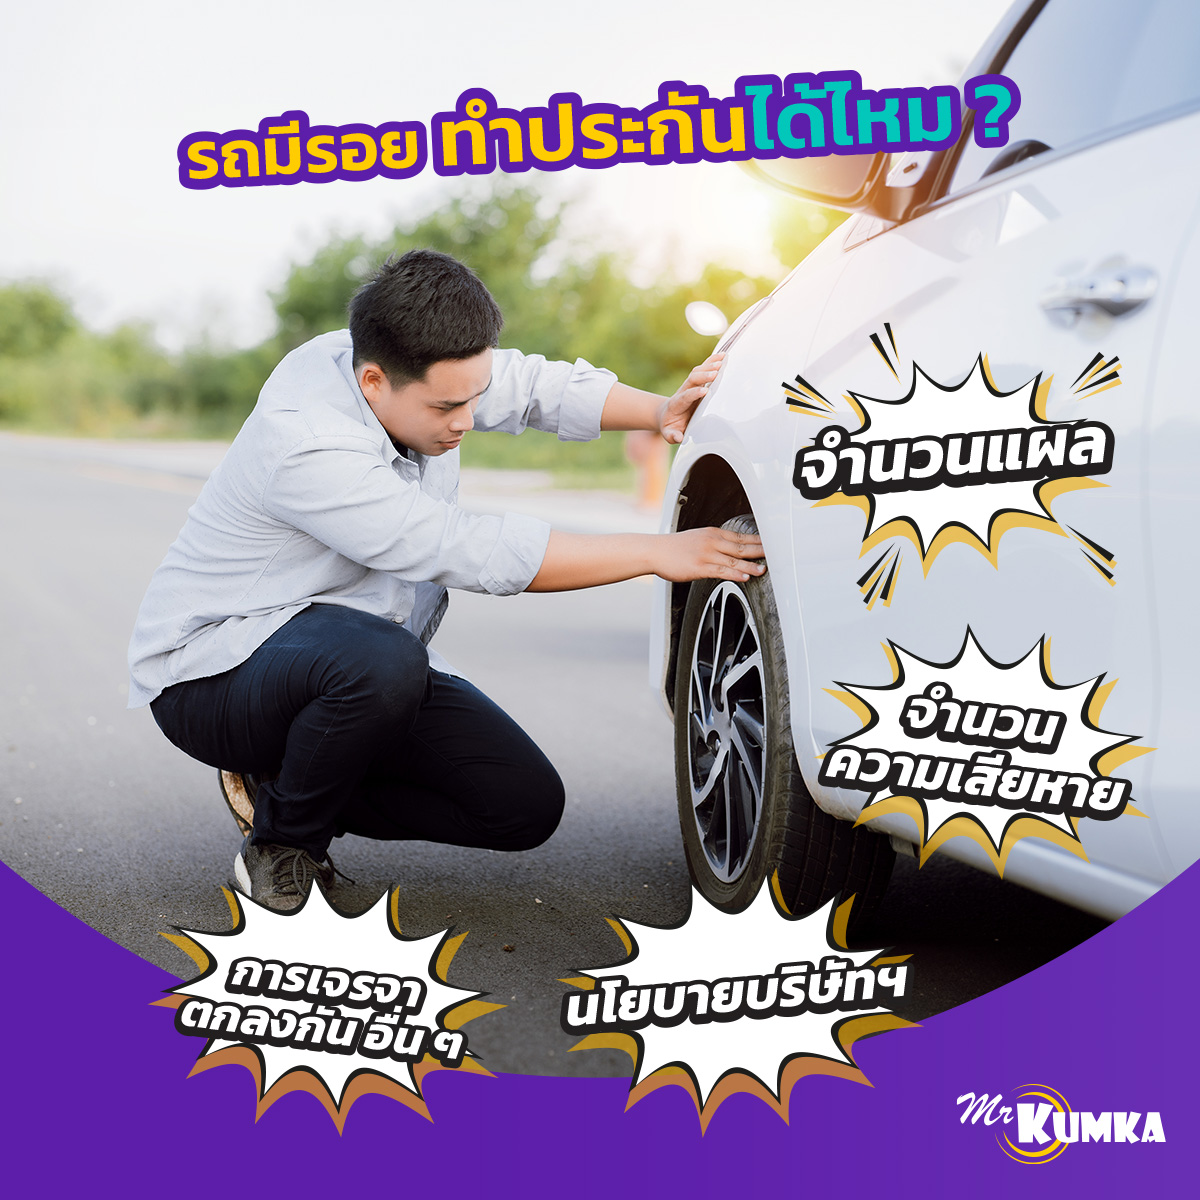 วิธีตรวจสภาพรถ เพื่อทำประกันภัยรถยนต์ ที่ MrKumka.com